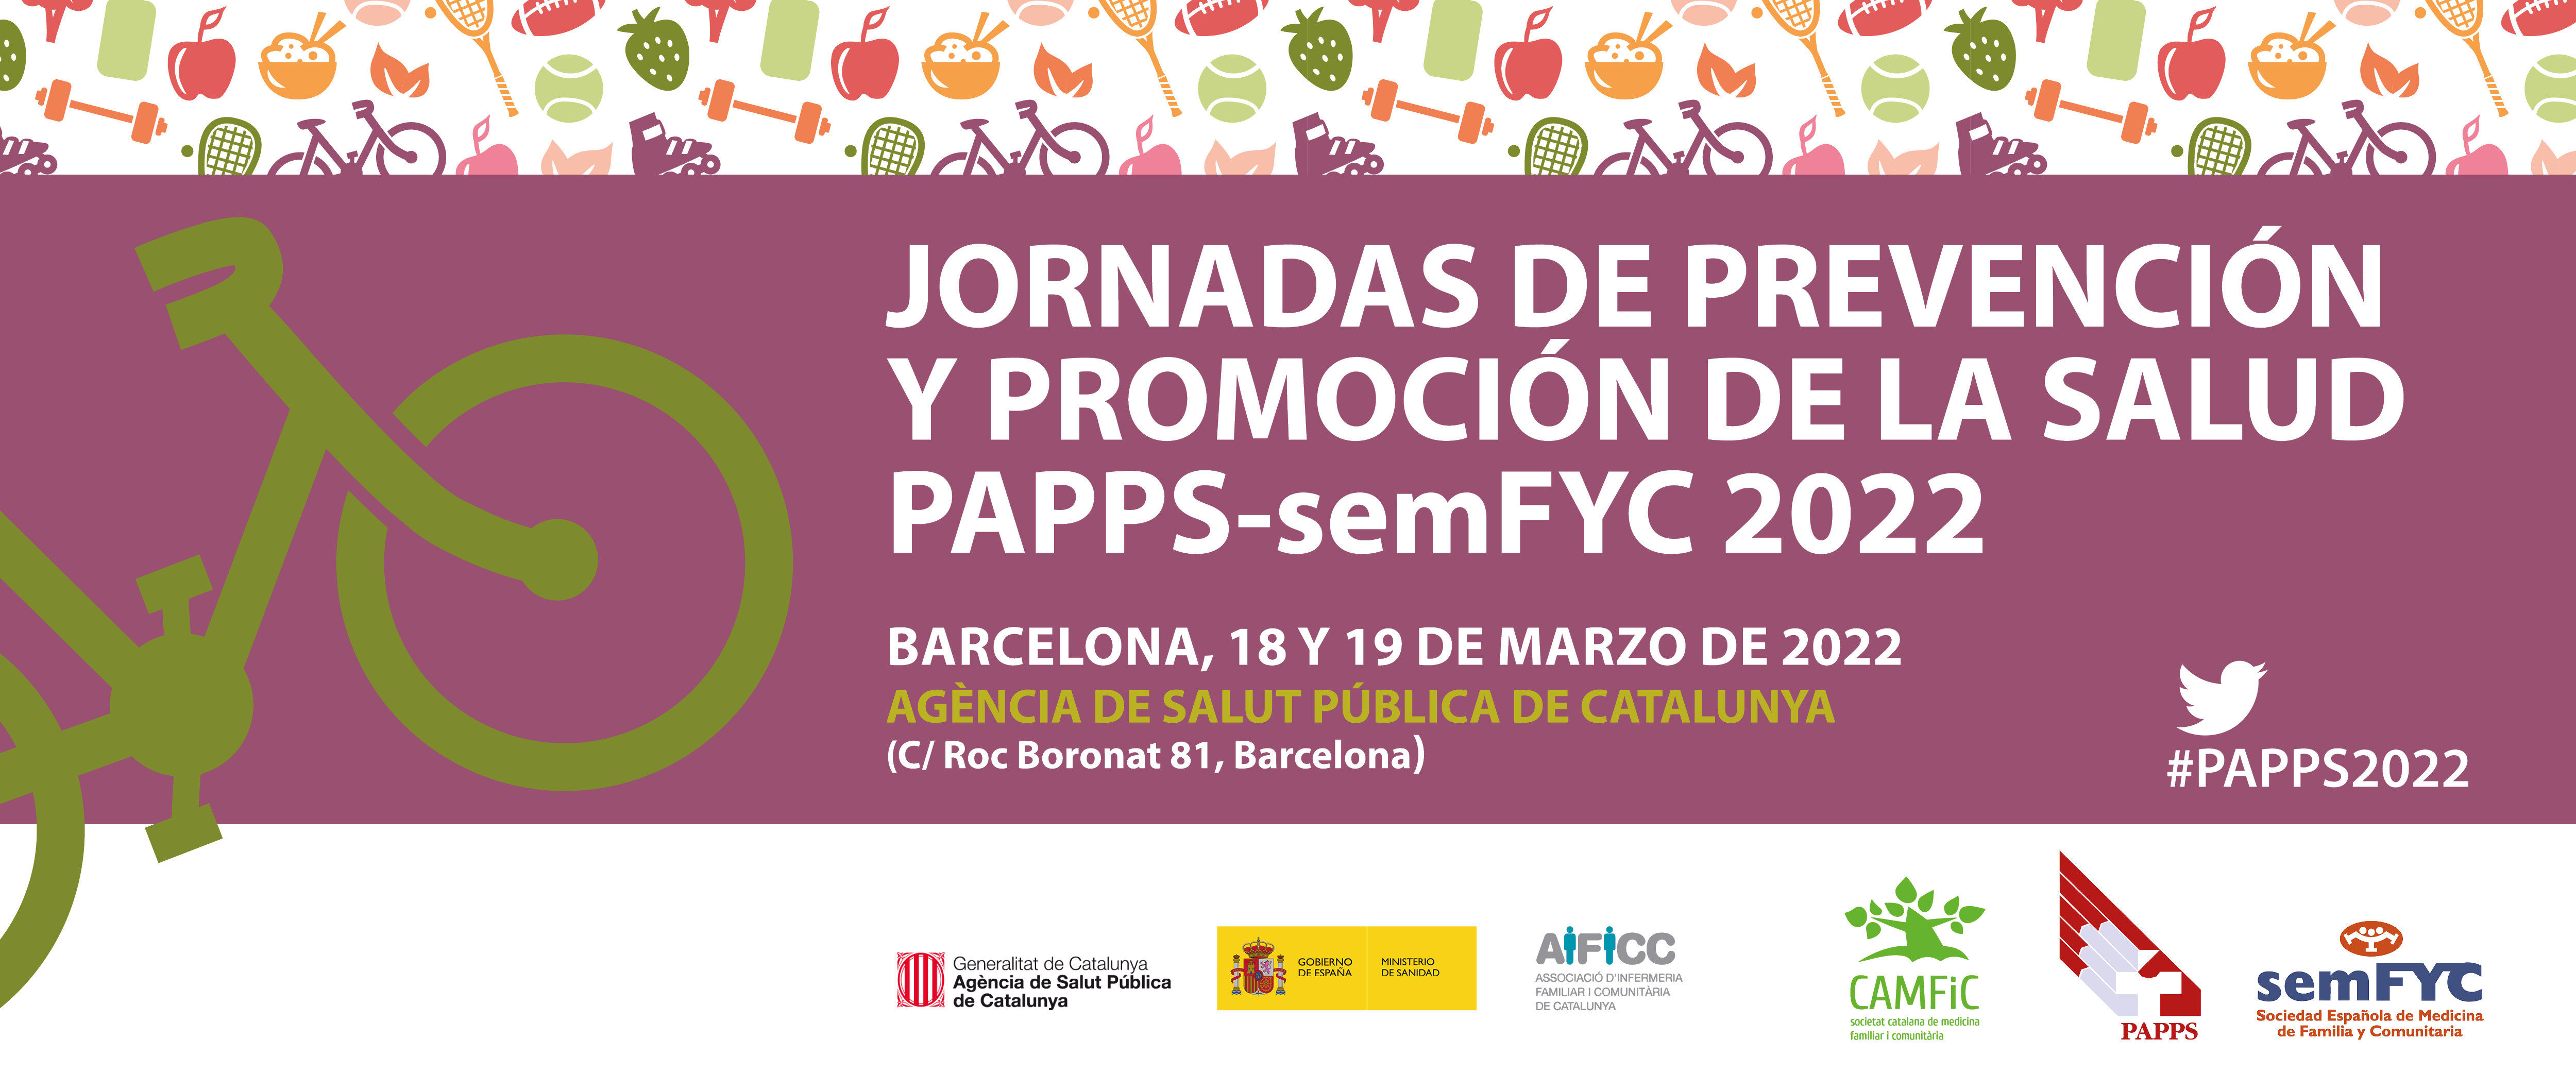 Las Jornadas PAPPS-semFYC 2022 desarrollan un completo programa para su celebración en Barcelona